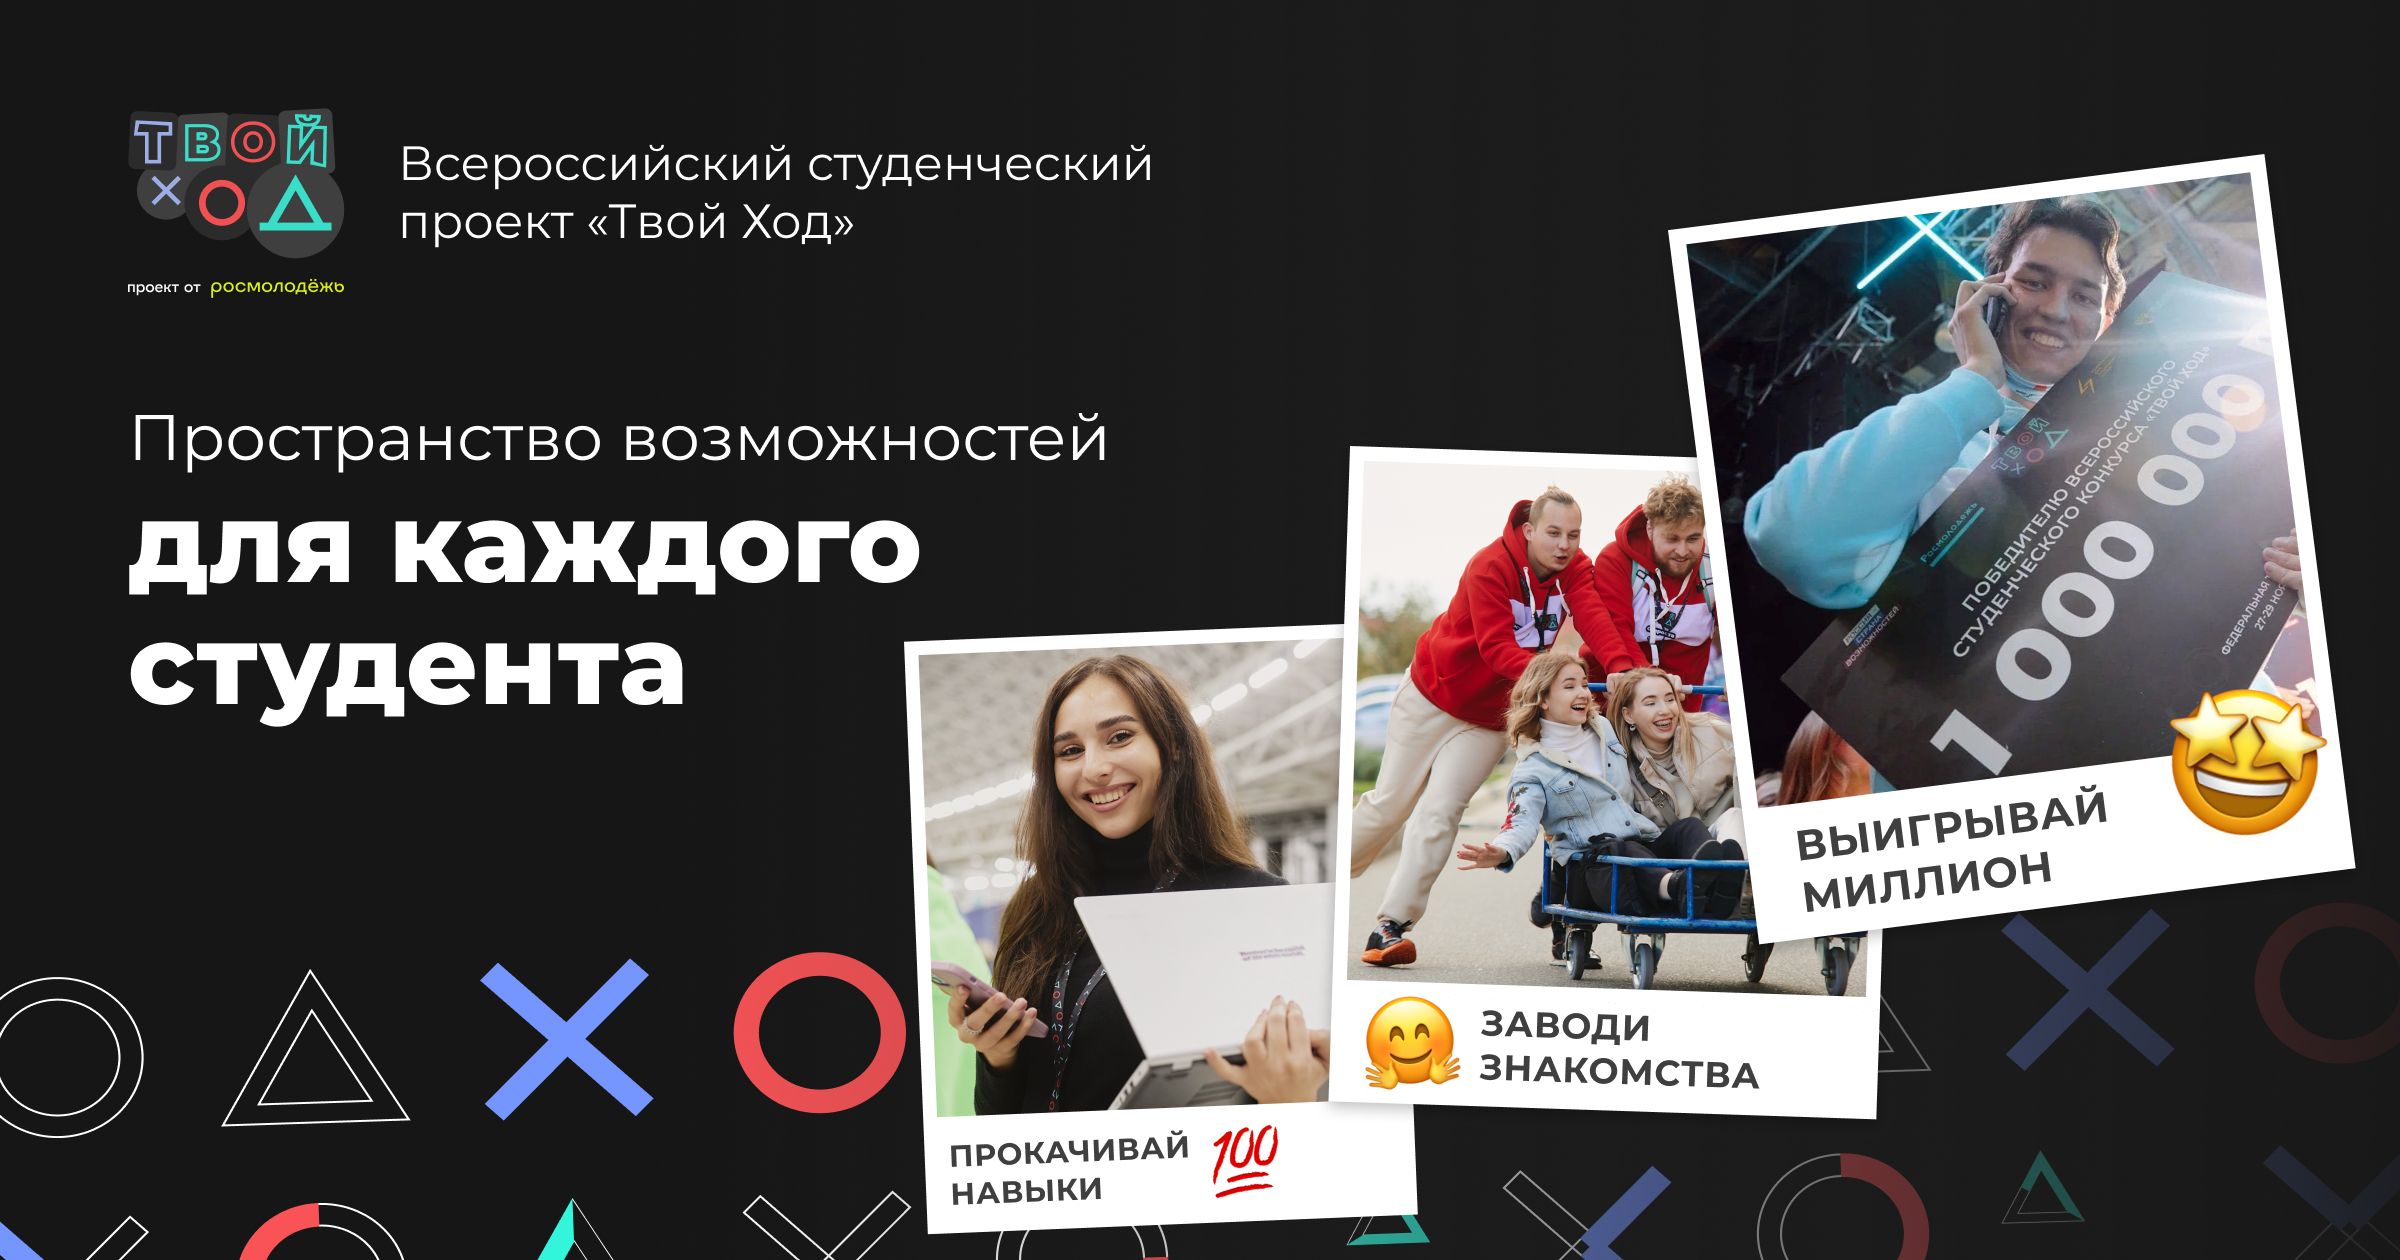 Всероссийский студенческий проект «Твой Ход»: во ВГУЭС учат победителей